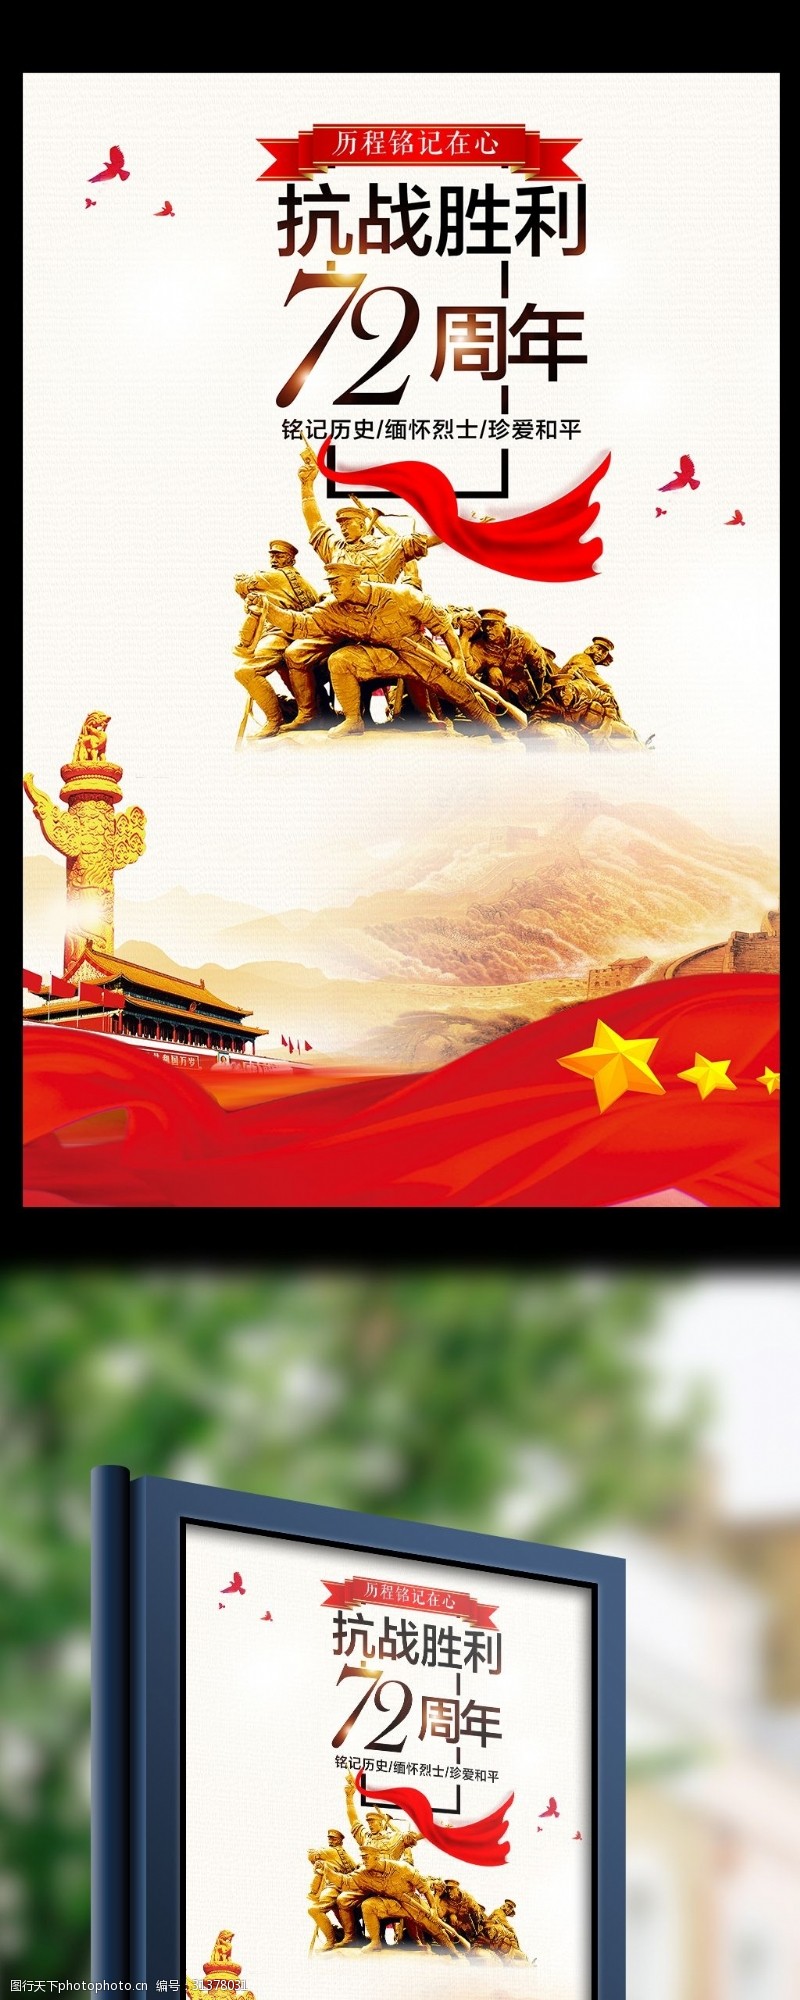 革命烈士抗战胜利72年宣传海报设计